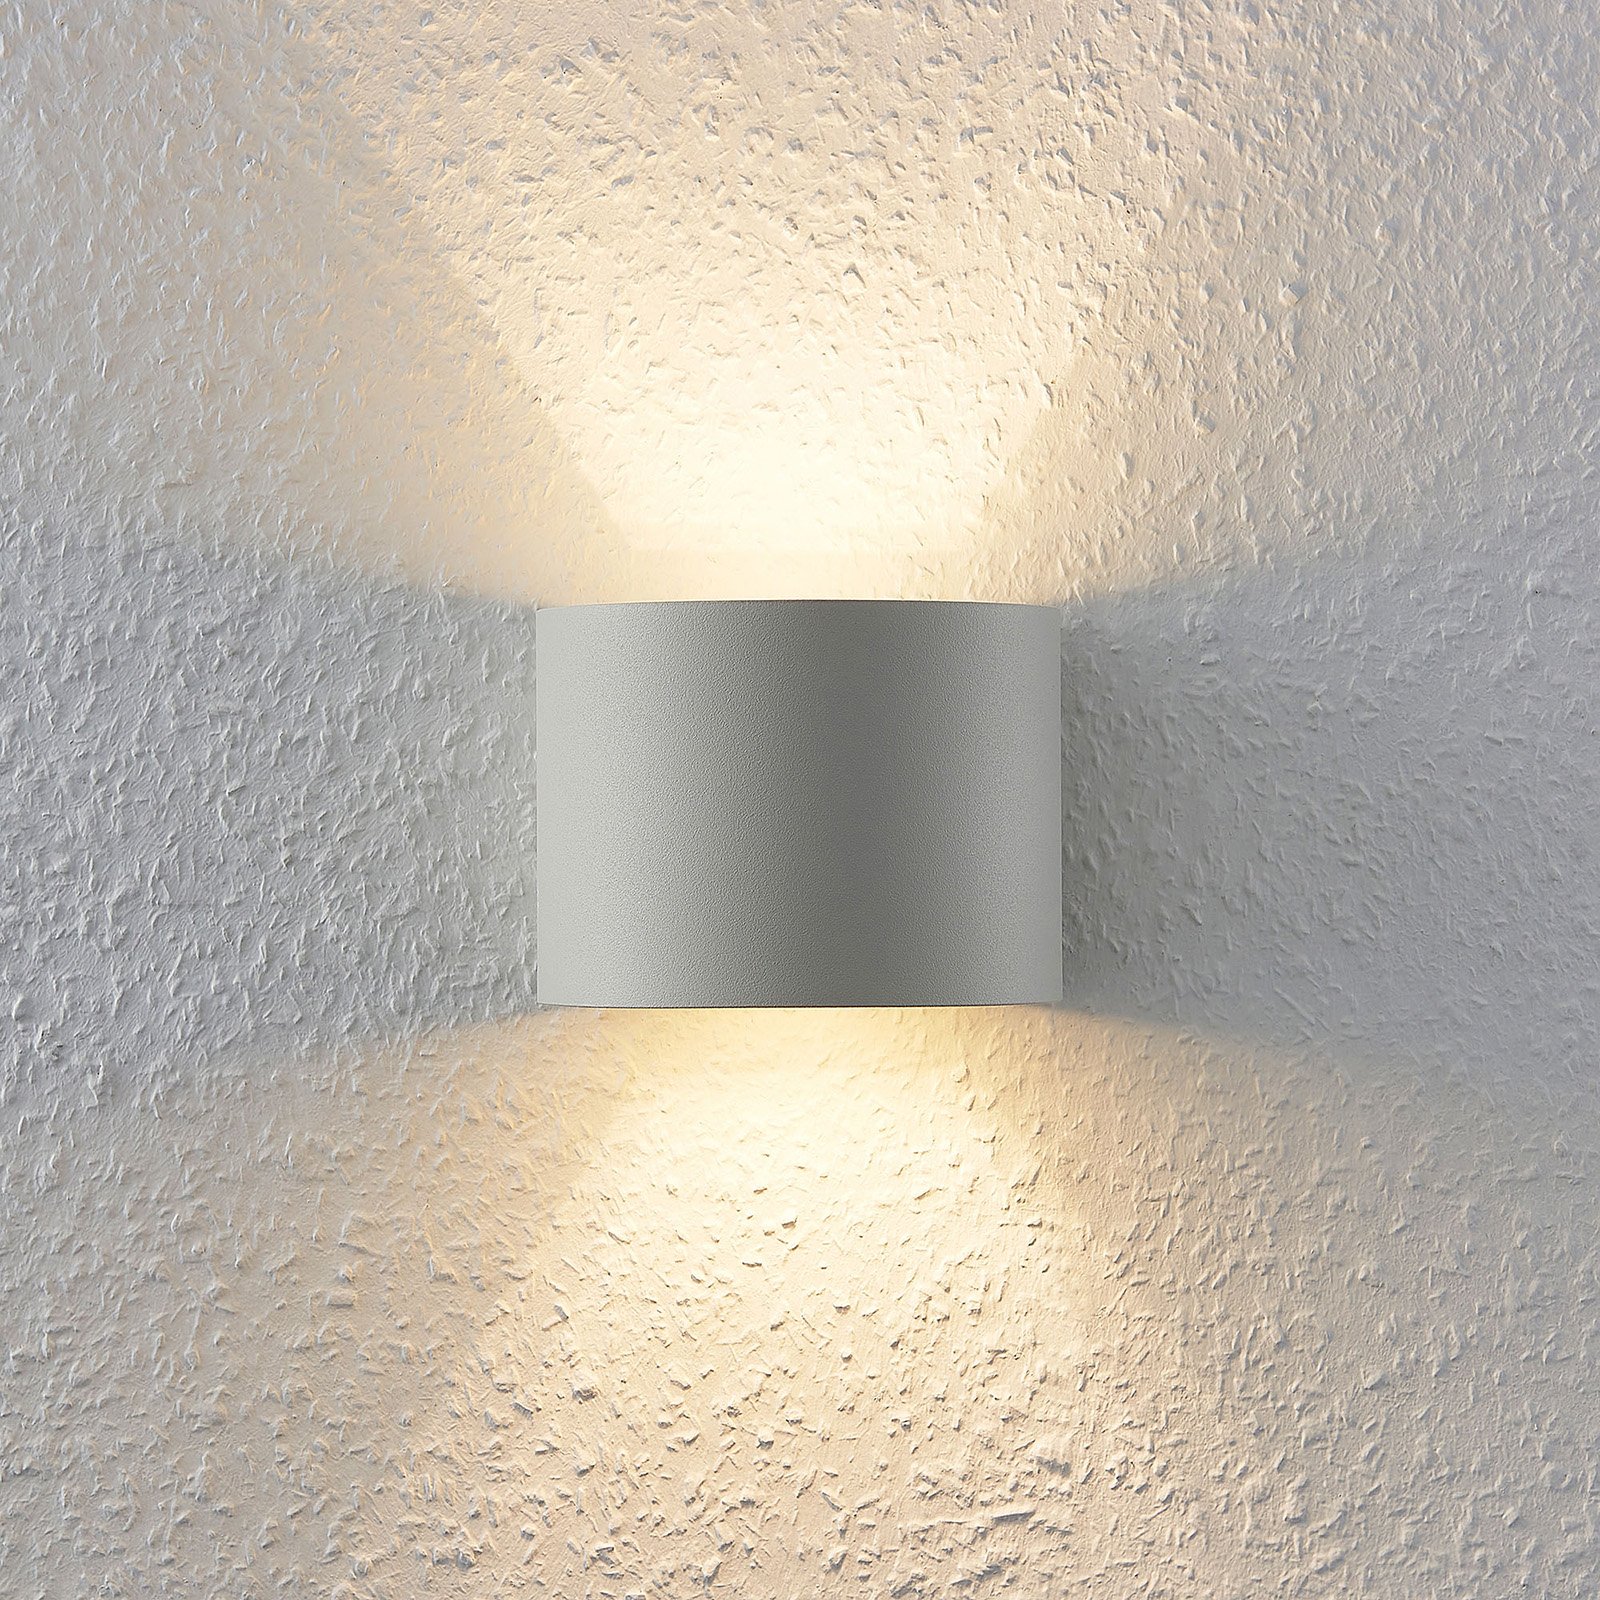 Arcchio fali lámpa Zuzana, kerek, fehér, G9, 13 cm széles